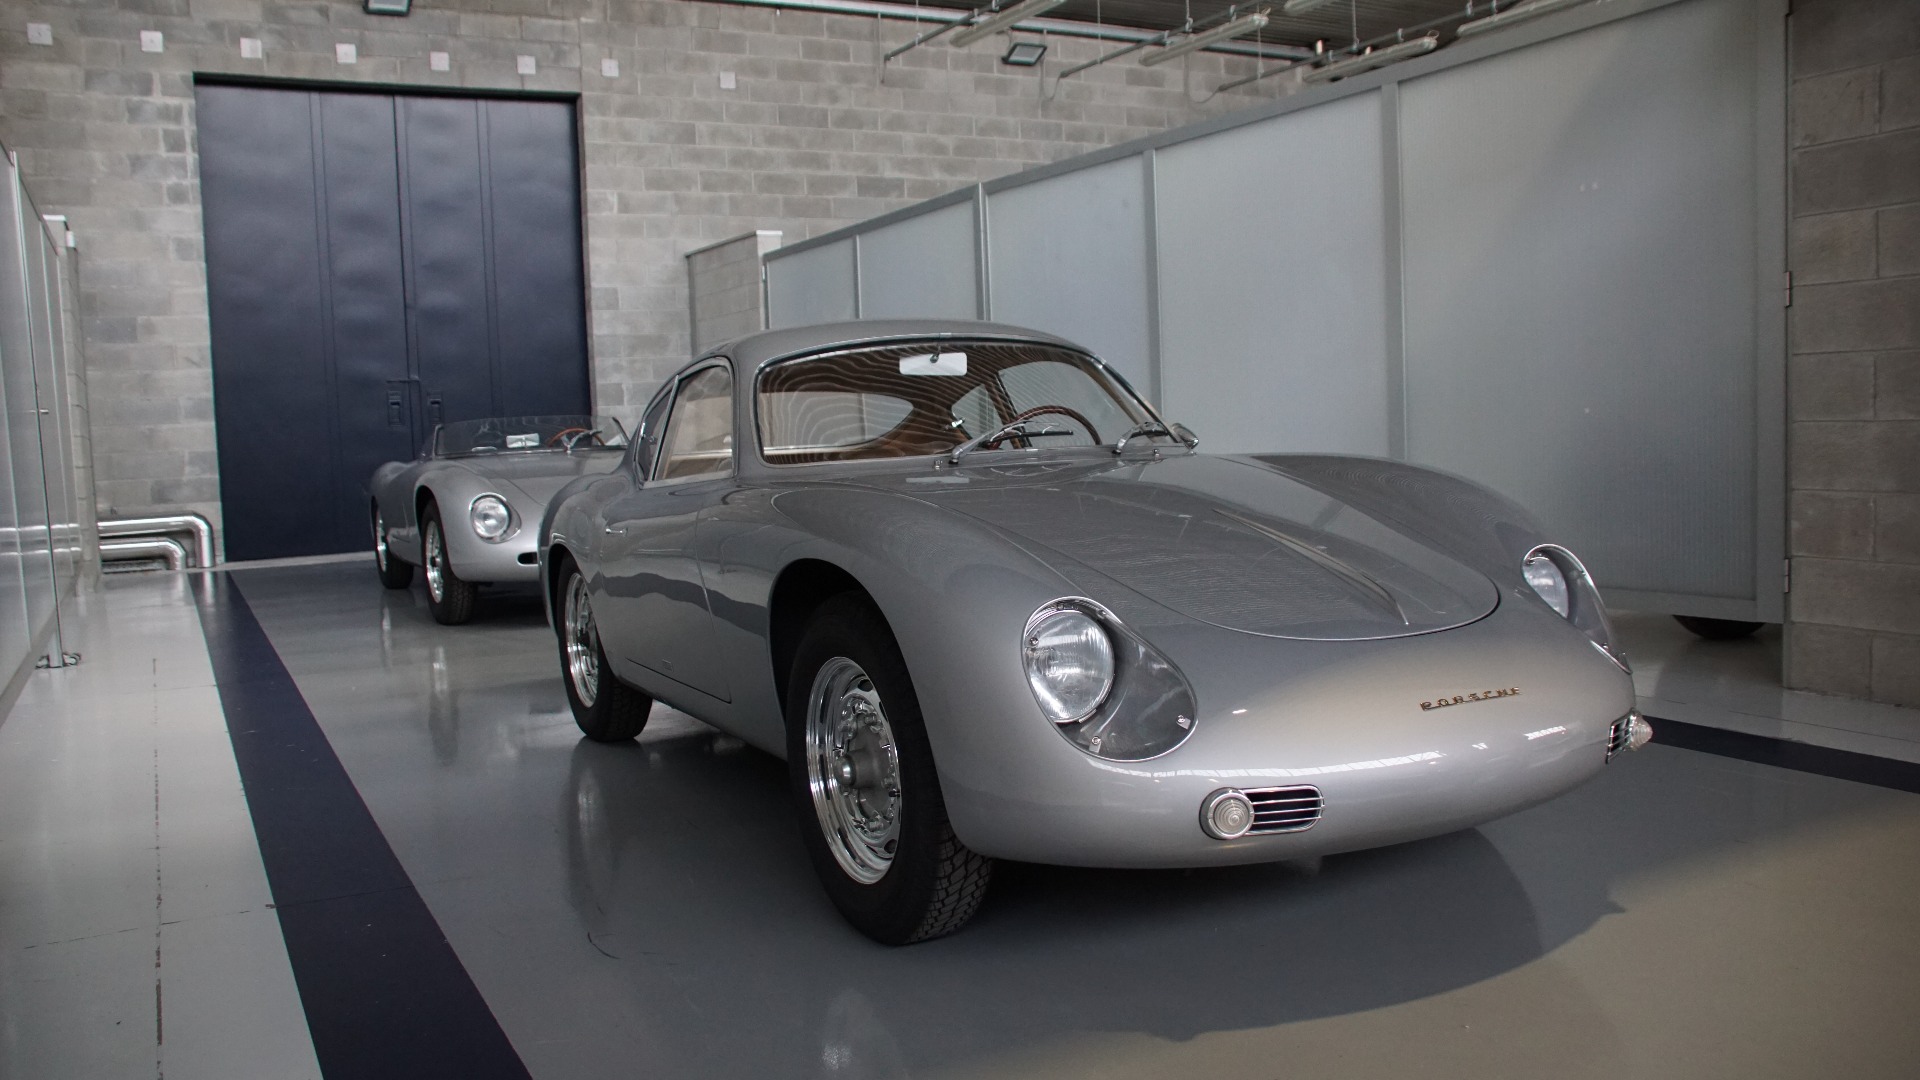 Zagato Porsche 356: En umulig bildrøm som viser hva dagens teknologi kan gjenskape